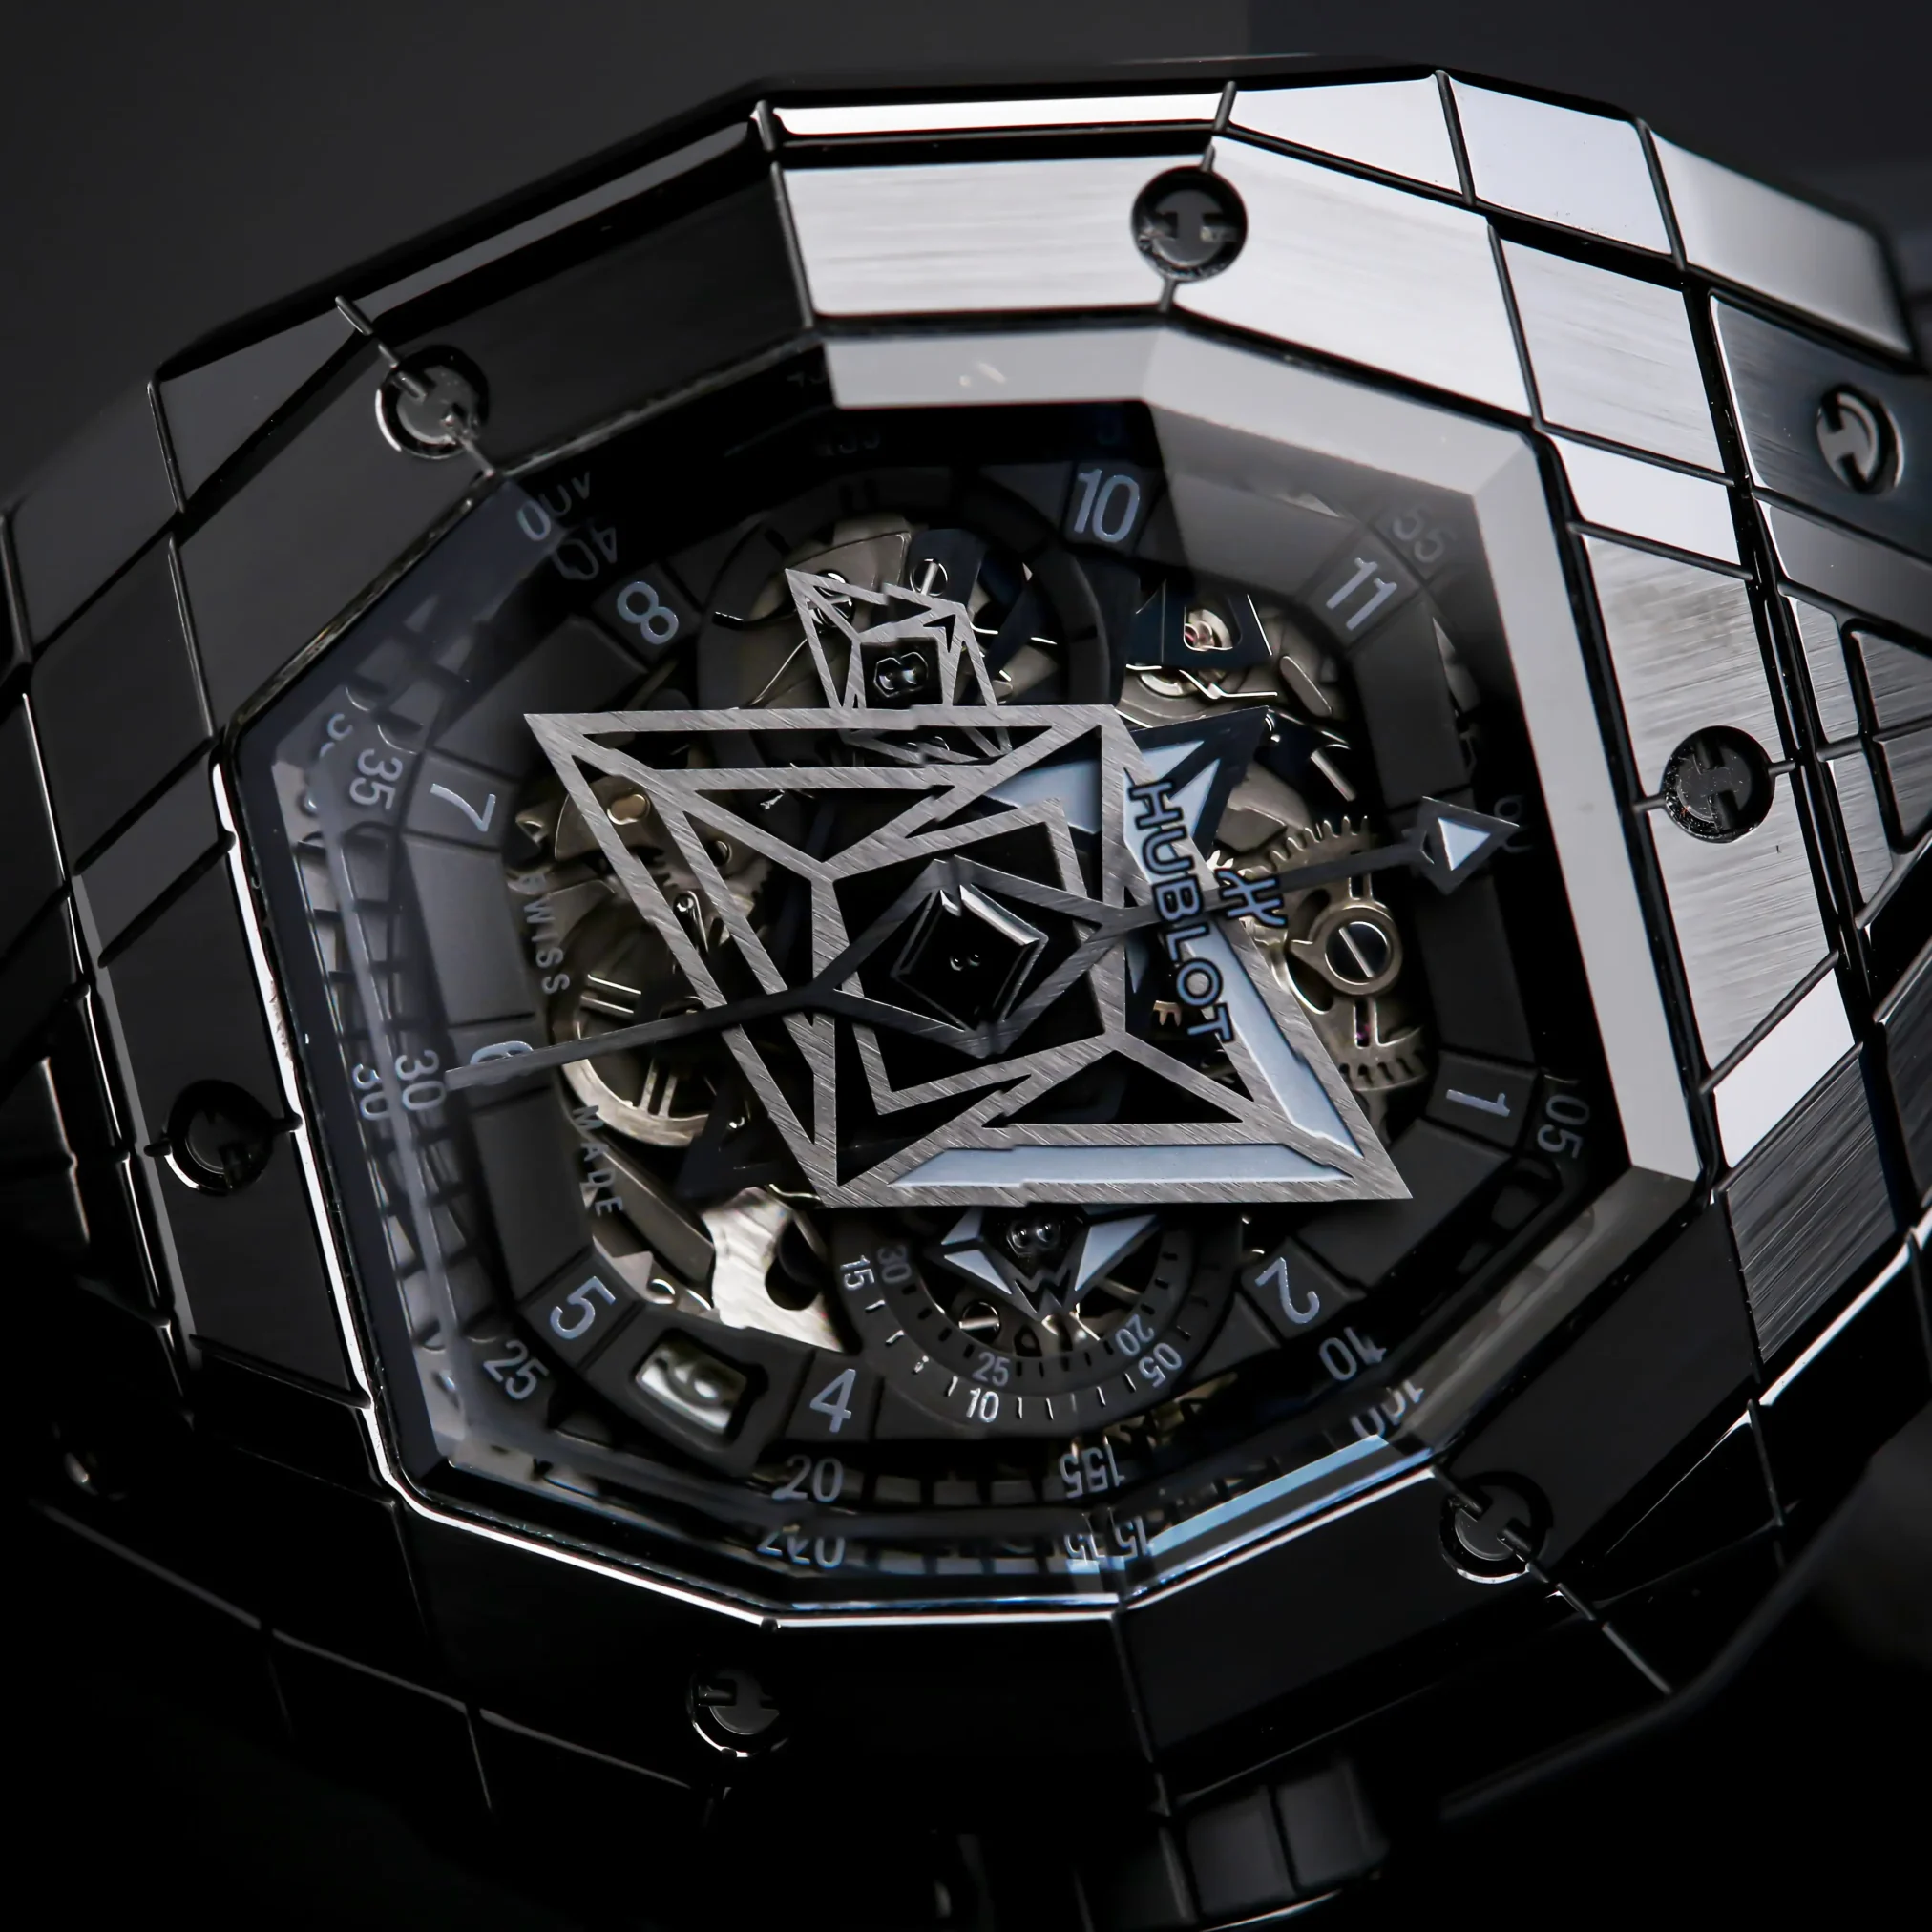 Đồng hồ Hublot Spirit of Big Bang Sang Bleu III All Black 648.CX.0114.RX.MXM23 với mặt số màu đen. Dây đeo bằng cao su. Thân vỏ bằng titanium.